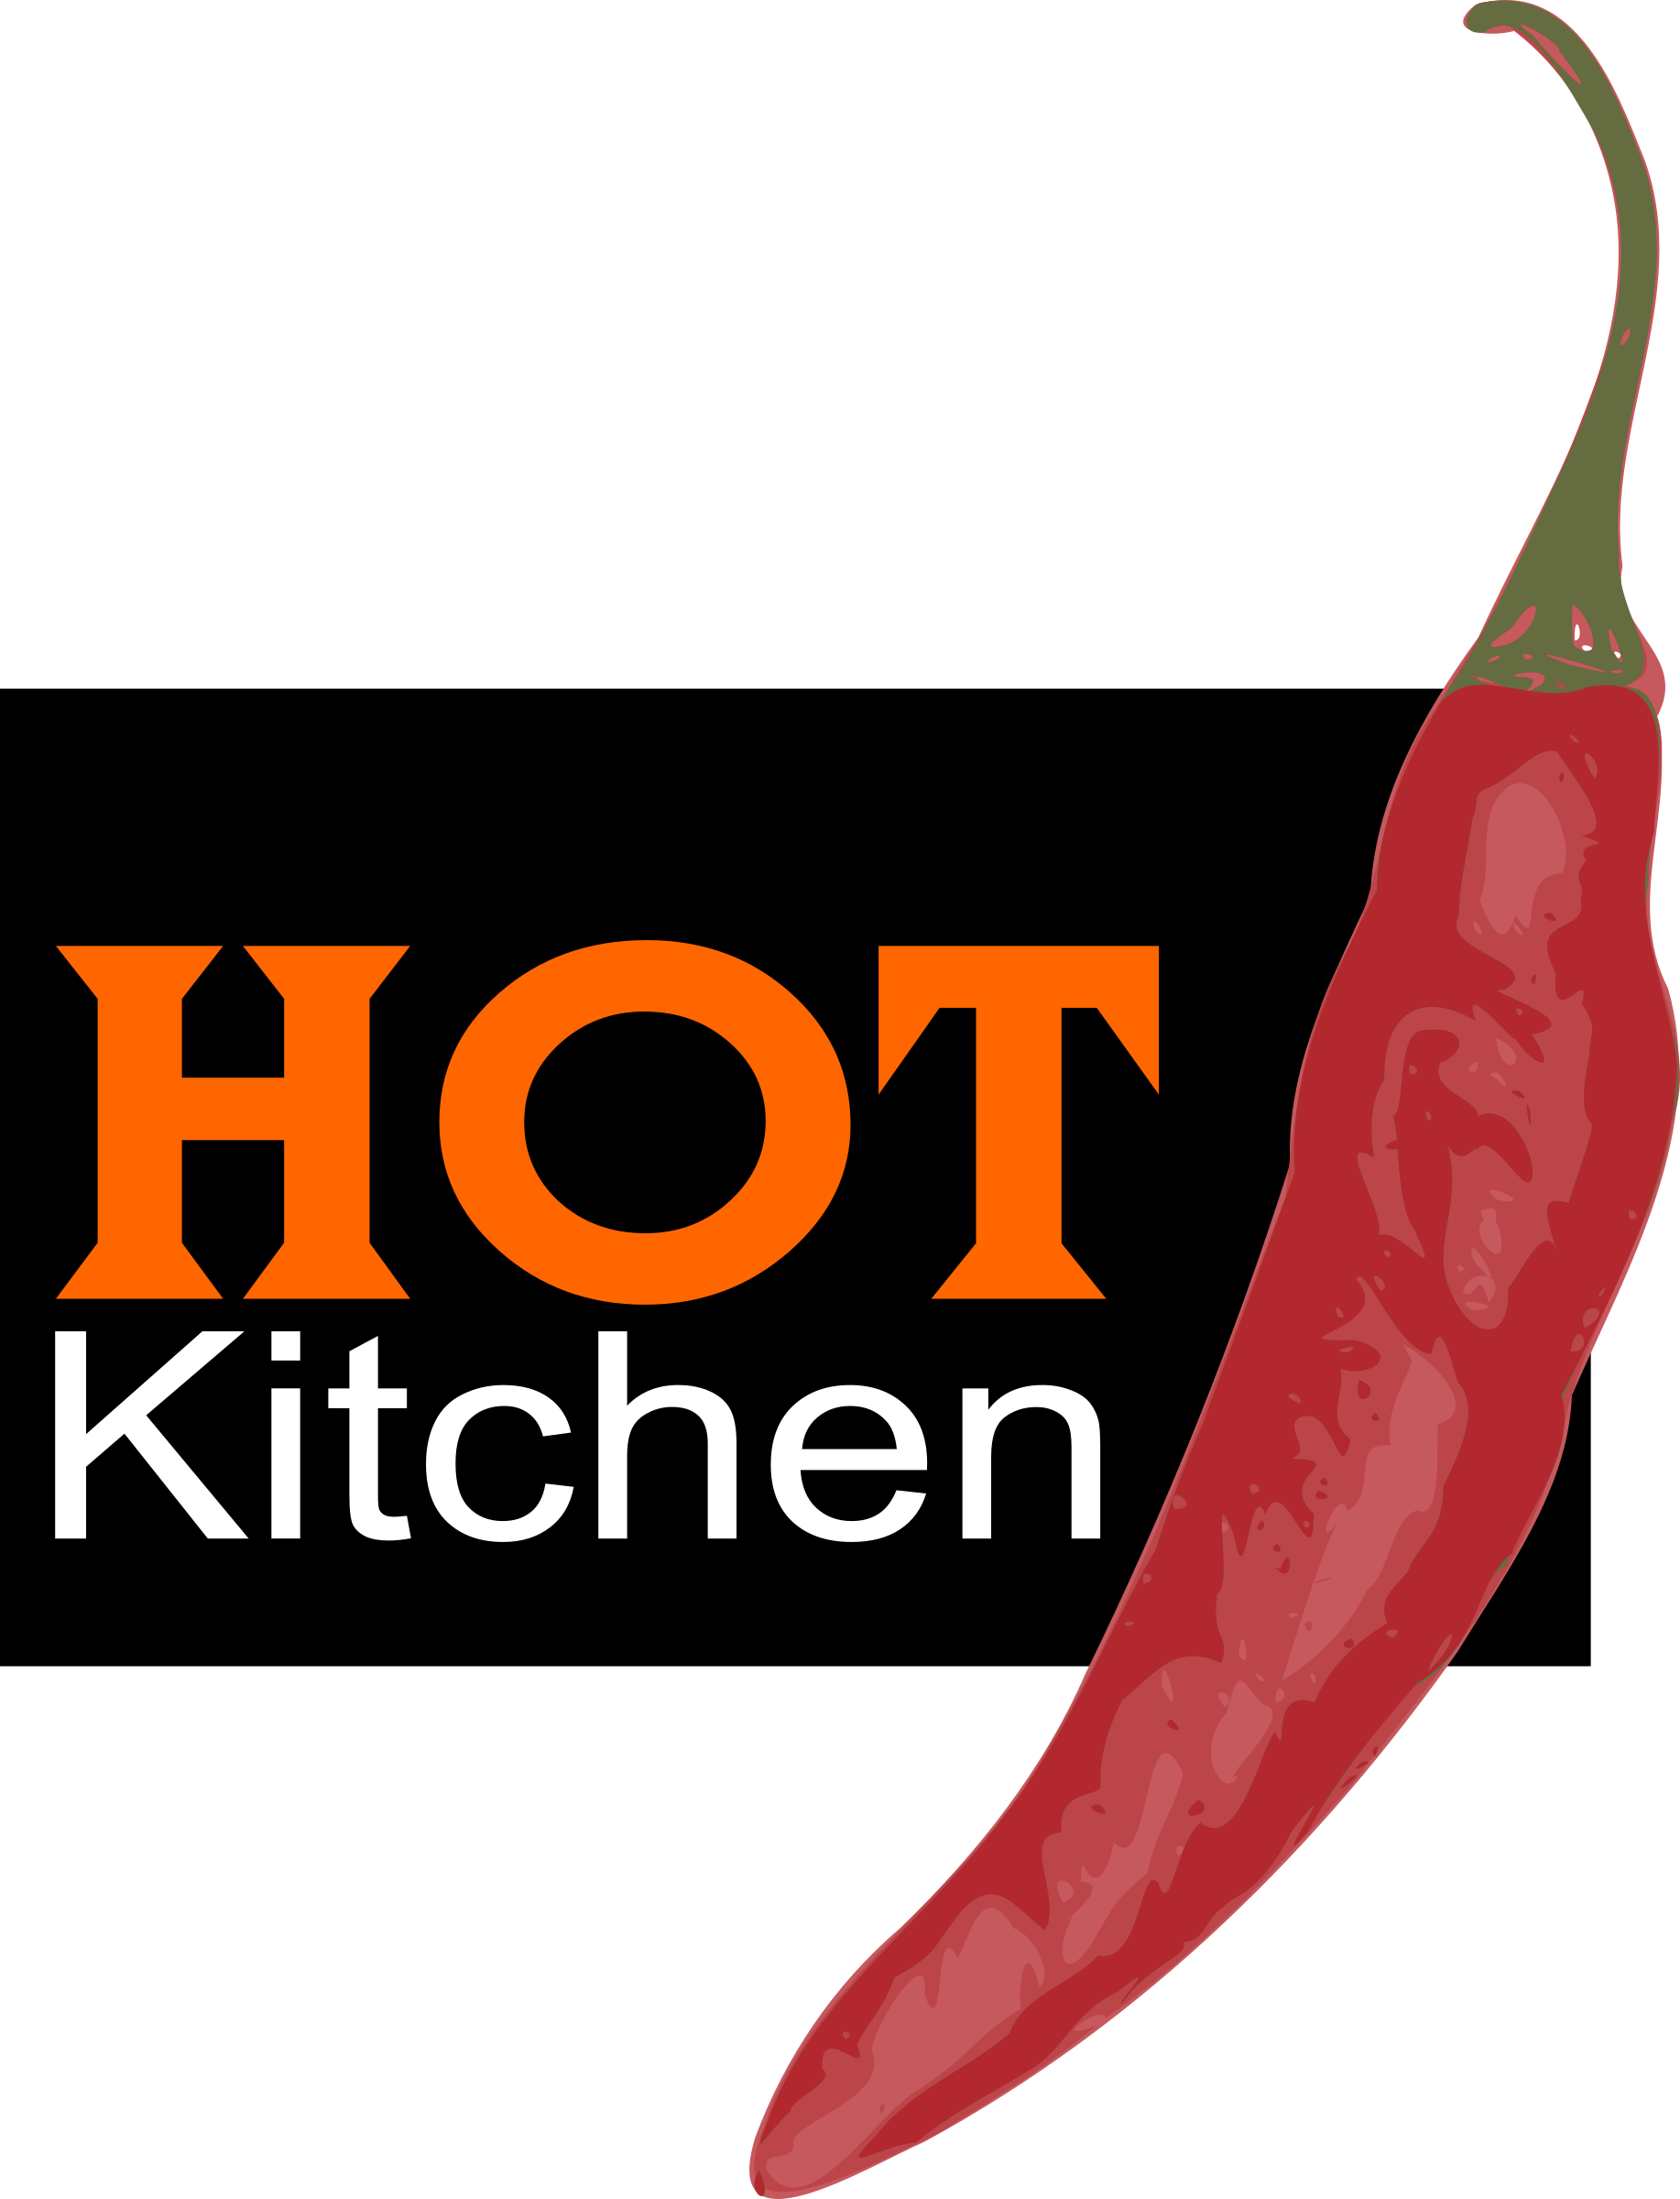 Stunning Hot Kitchen - Chili Pepper (1834x2400)